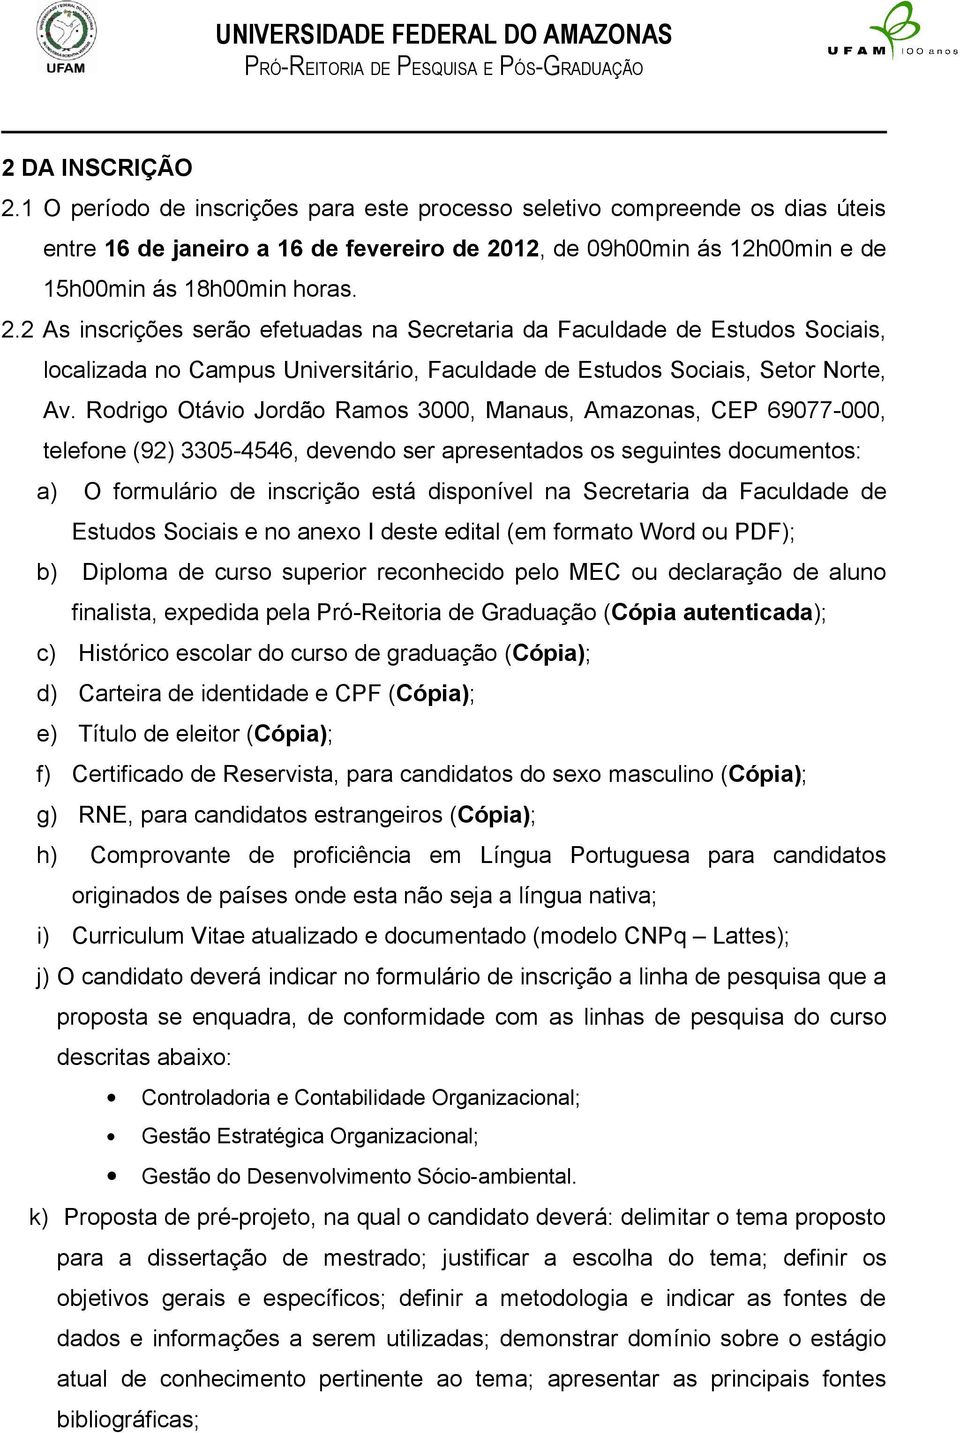 Rodrigo Otávio Jordão Ramos 3000, Manaus, Amazonas, CEP 69077-000, telefone (92) 3305-4546, devendo ser apresentados os seguintes documentos: a) O formulário de inscrição está disponível na